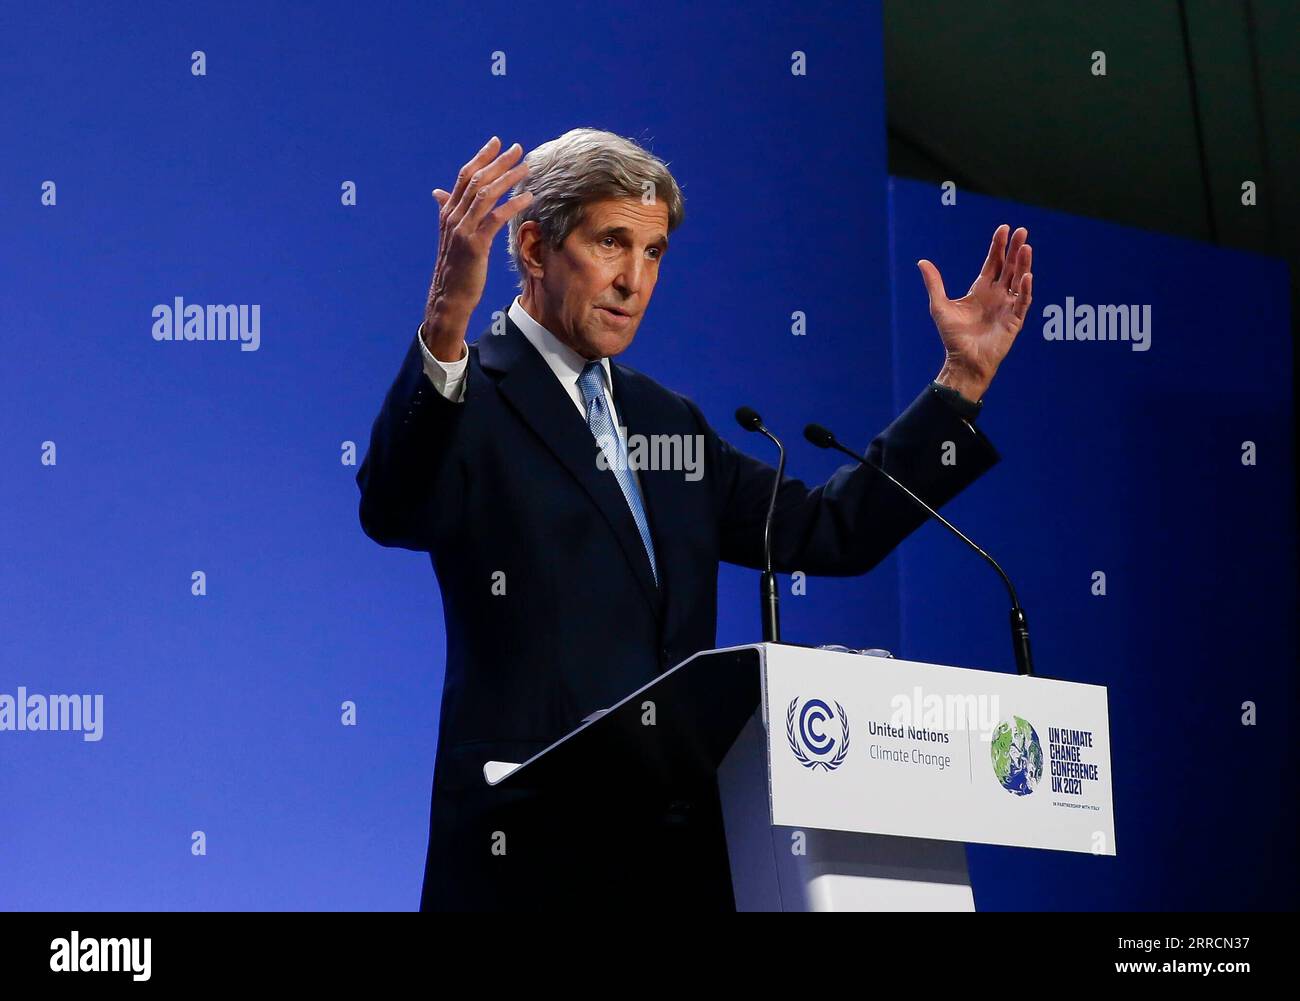 211111 -- GLASGOW, 11. November 2021 -- John Kerry, US-Sondergesandter des Präsidenten für Klimafragen, spricht auf einer Pressekonferenz während der laufenden 26. Tagung der Konferenz der Vertragsparteien COP26 zum Rahmenübereinkommen der Vereinten Nationen über Klimaänderungen am 10. November 2021 in Glasgow, Schottland, Vereinigtes Königreich. China und die Vereinigten Staaten haben am Mittwoch die China-USA freigegeben Gemeinsame Glasgower Erklärung zur Verbesserung des Klimapakts in den 2020er Jahren hier auf der laufenden COP26 zum Rahmenübereinkommen der Vereinten Nationen über Klimaänderungen. UK-GLASGOW-COP26-CHINA-U.S.-GEMEINSAME ERKLÄRUNG HANXYAN VERÖFFENTLICHUNG Stockfoto